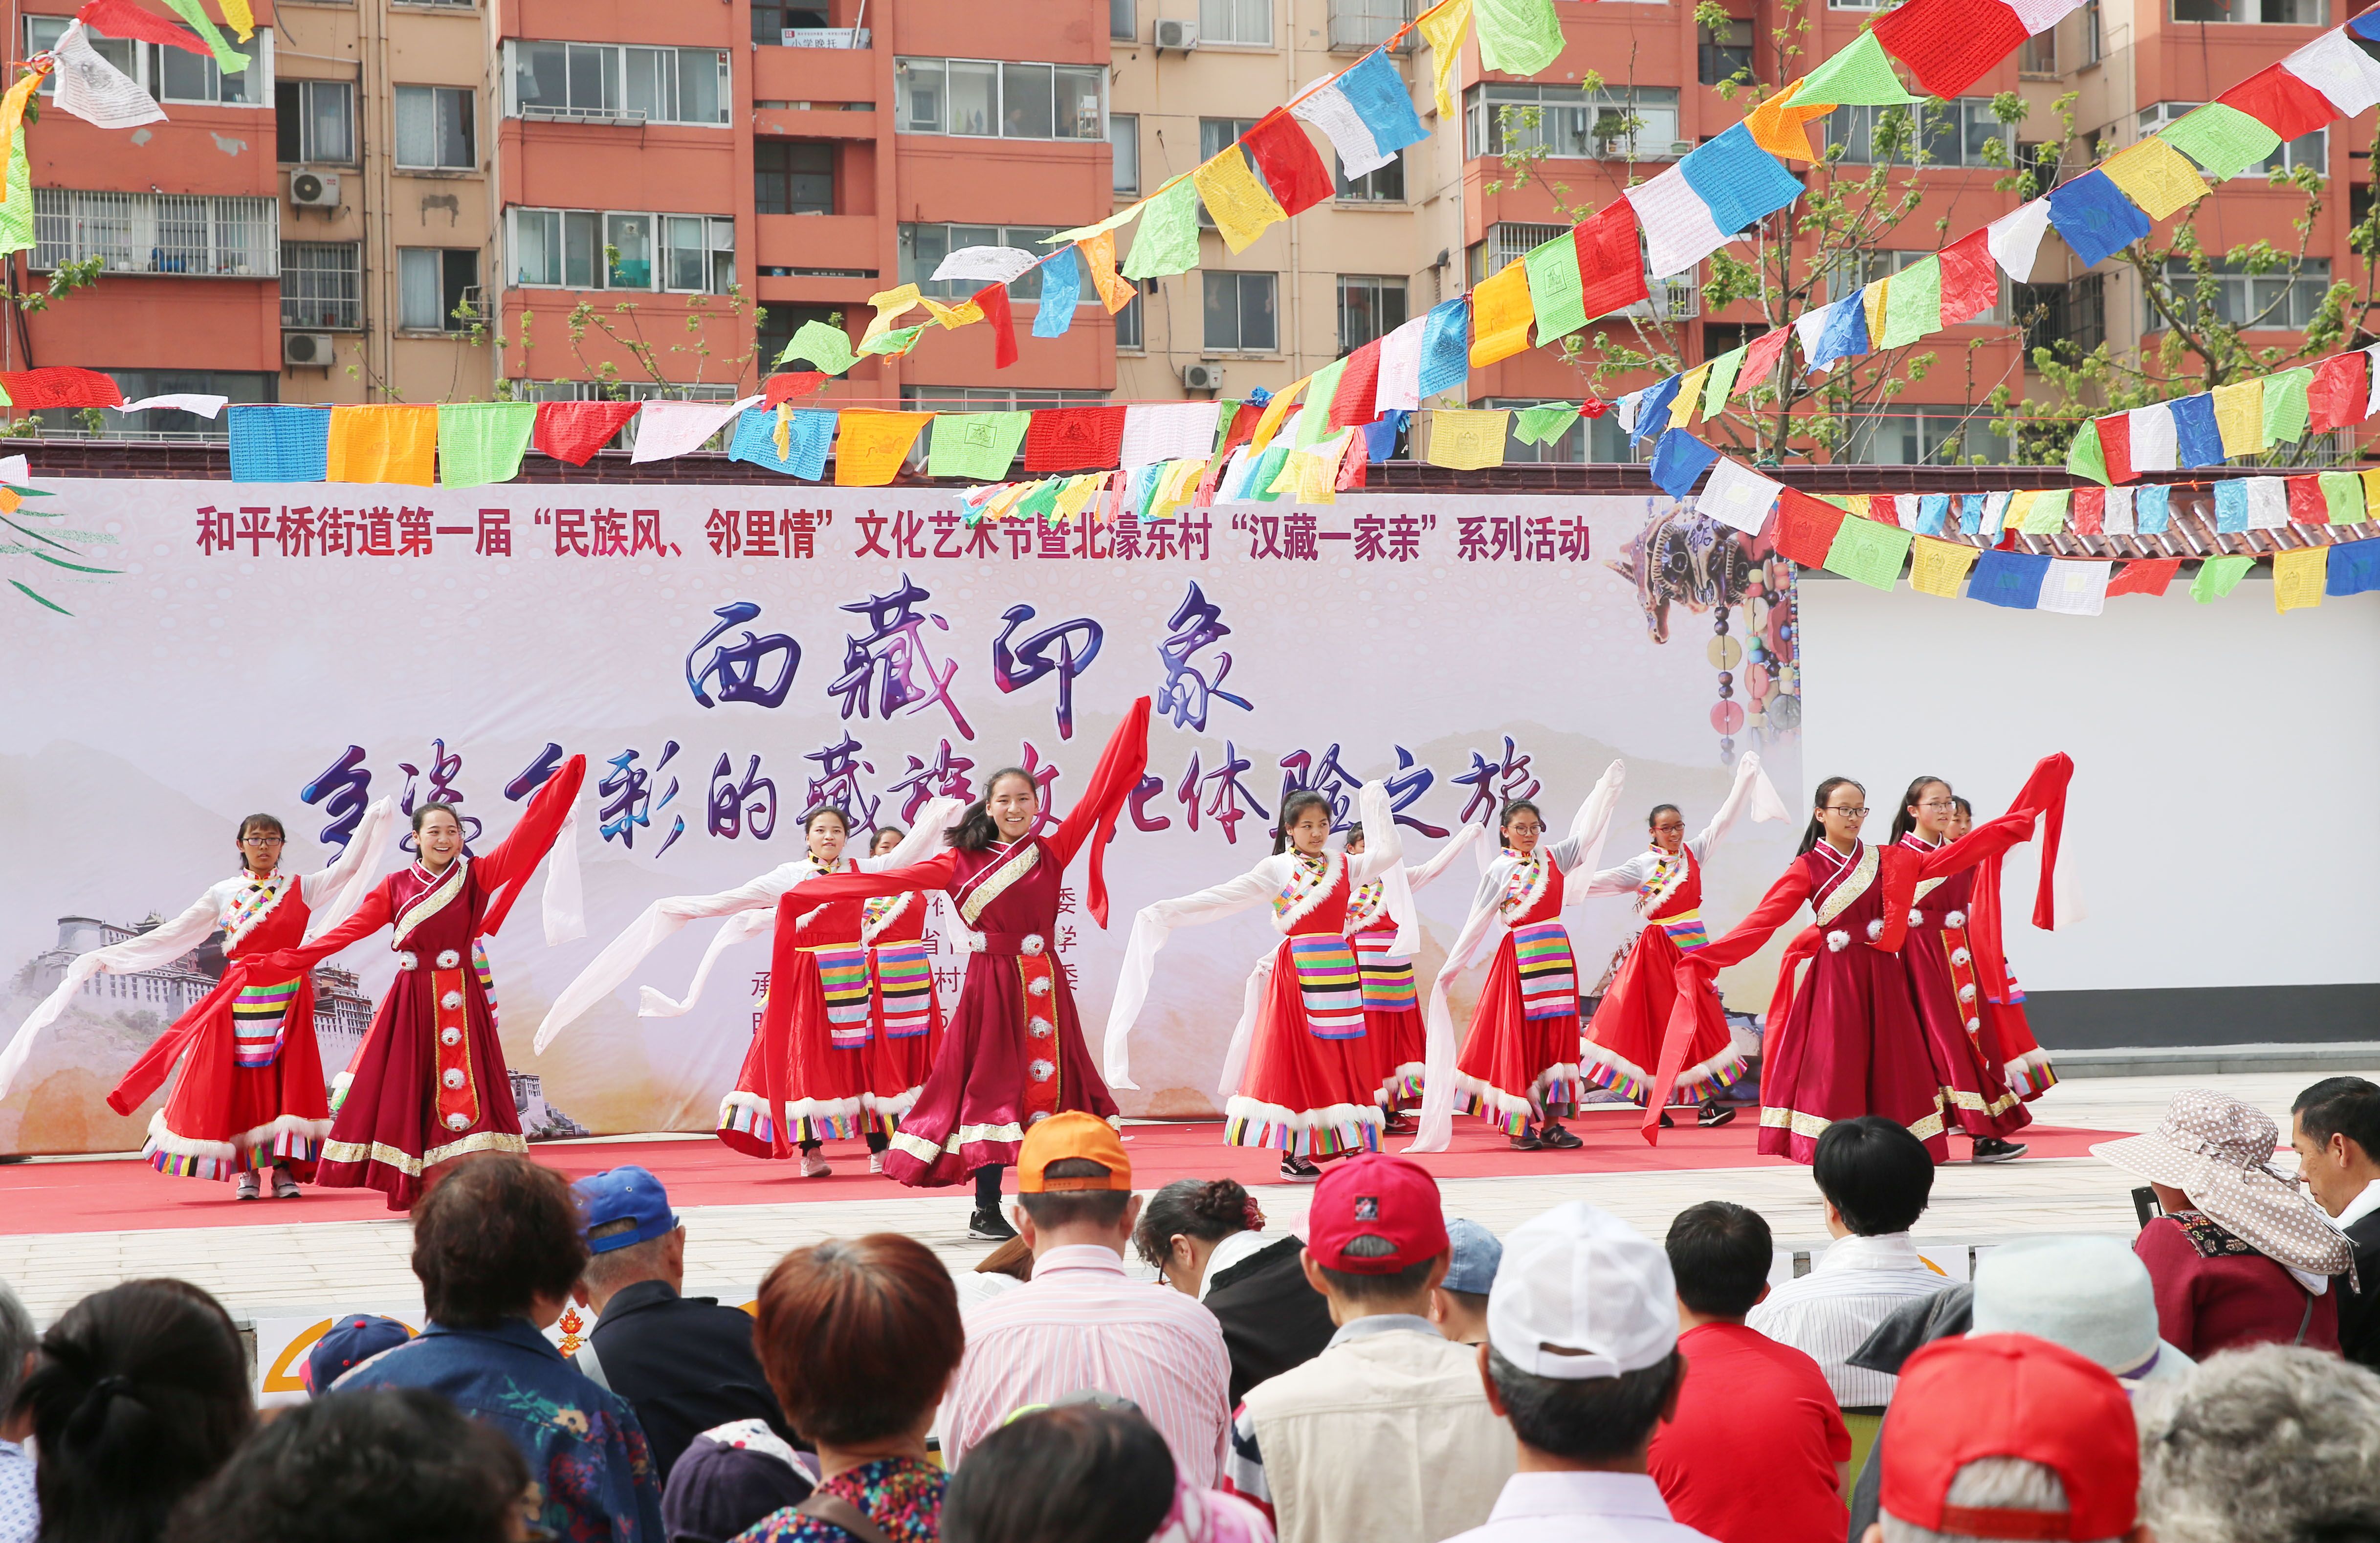 D2-西藏班学生走进社区进行汉族文化交流